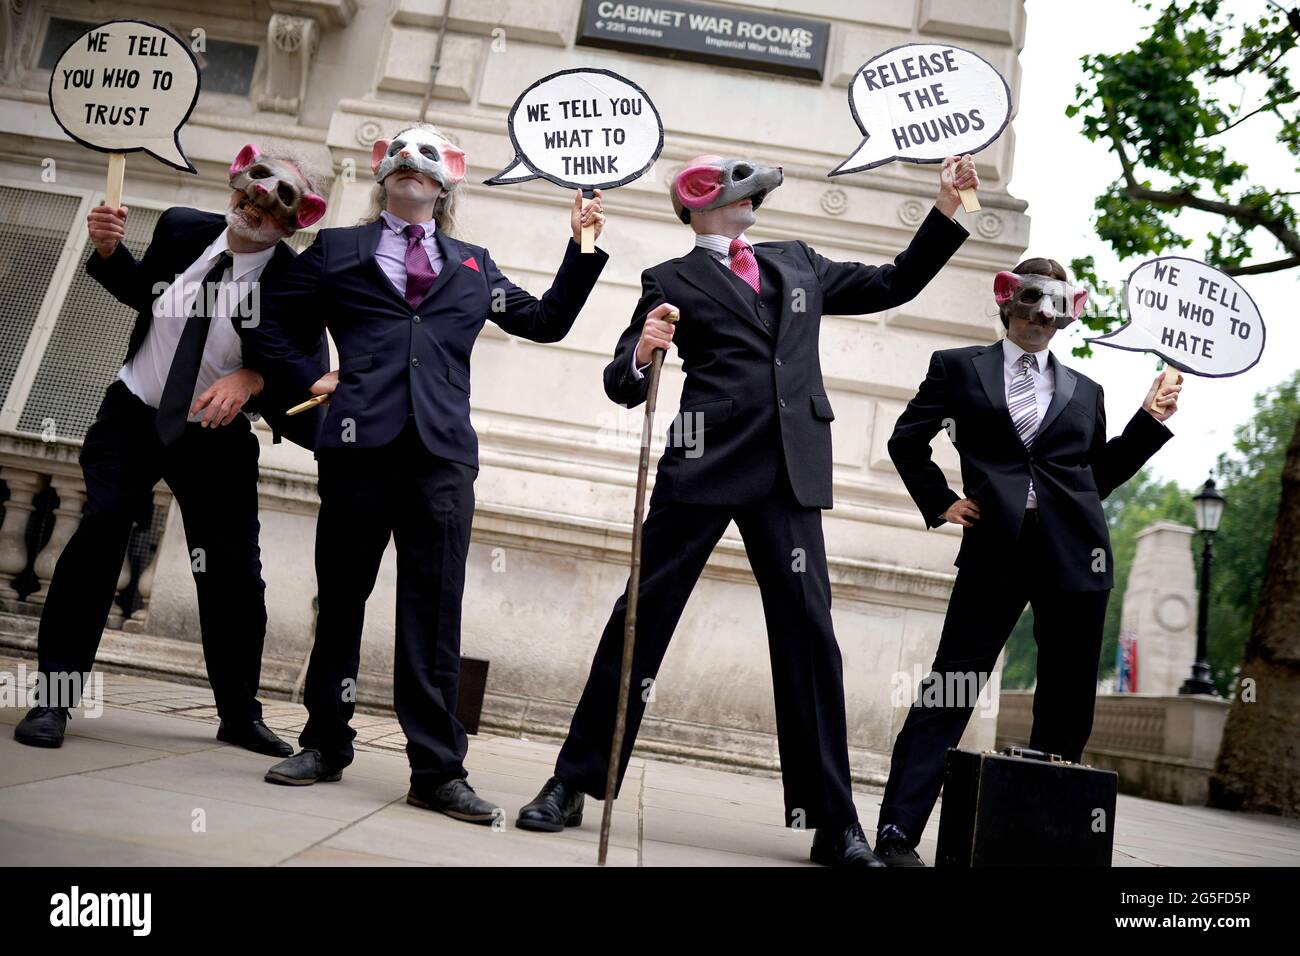 Die Demonstranten der Extinction Rebellion tragen in Whitehall, London, Rattenmasken als Teil der Kampagne der Protestgruppe zur Pressefreiheit. Bilddatum: Sonntag, 27. Juni 2021. Stockfoto